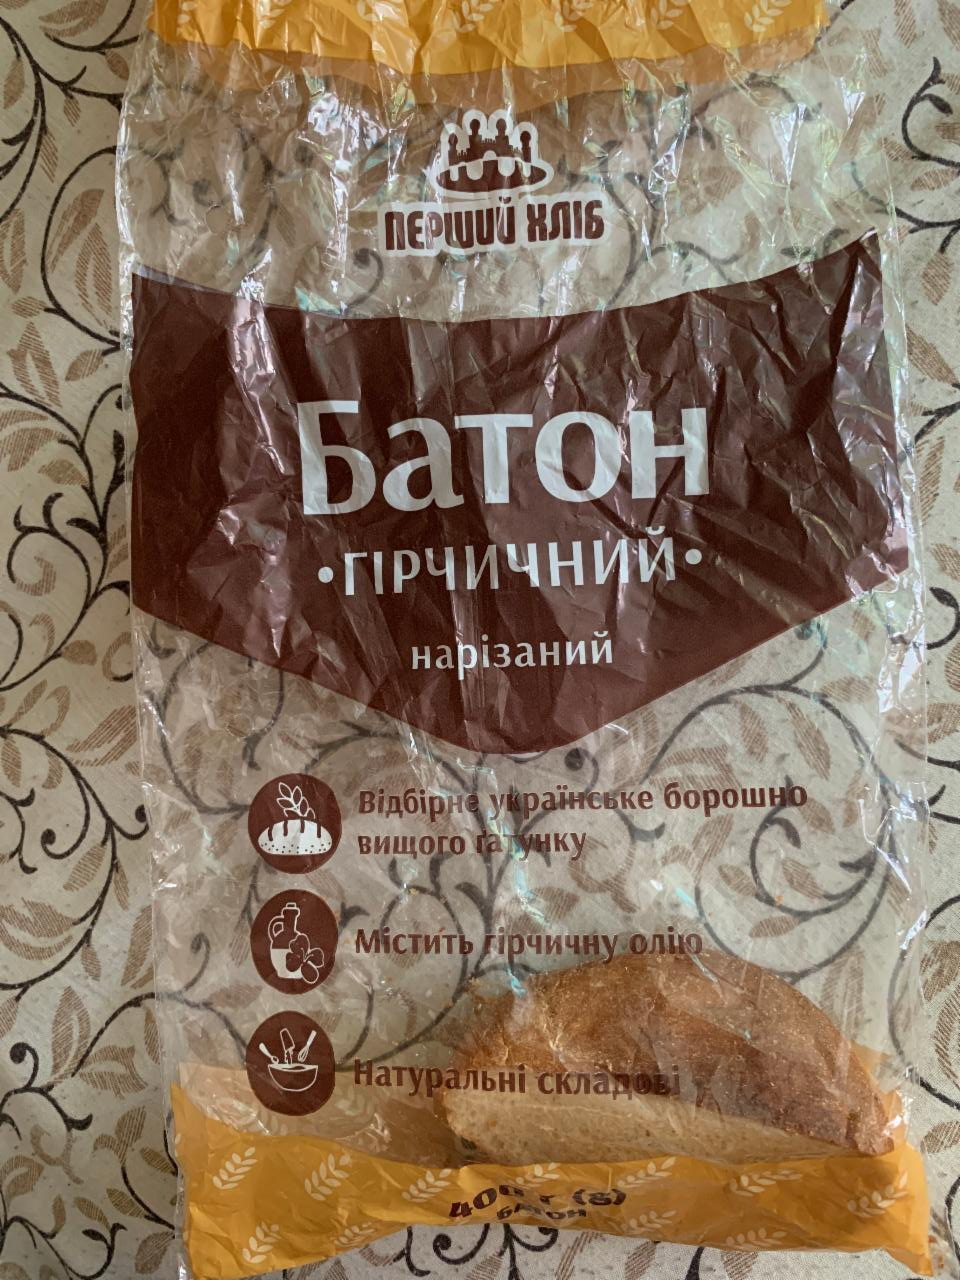 Фото - Батон нарезной Горчичный Перший хліб